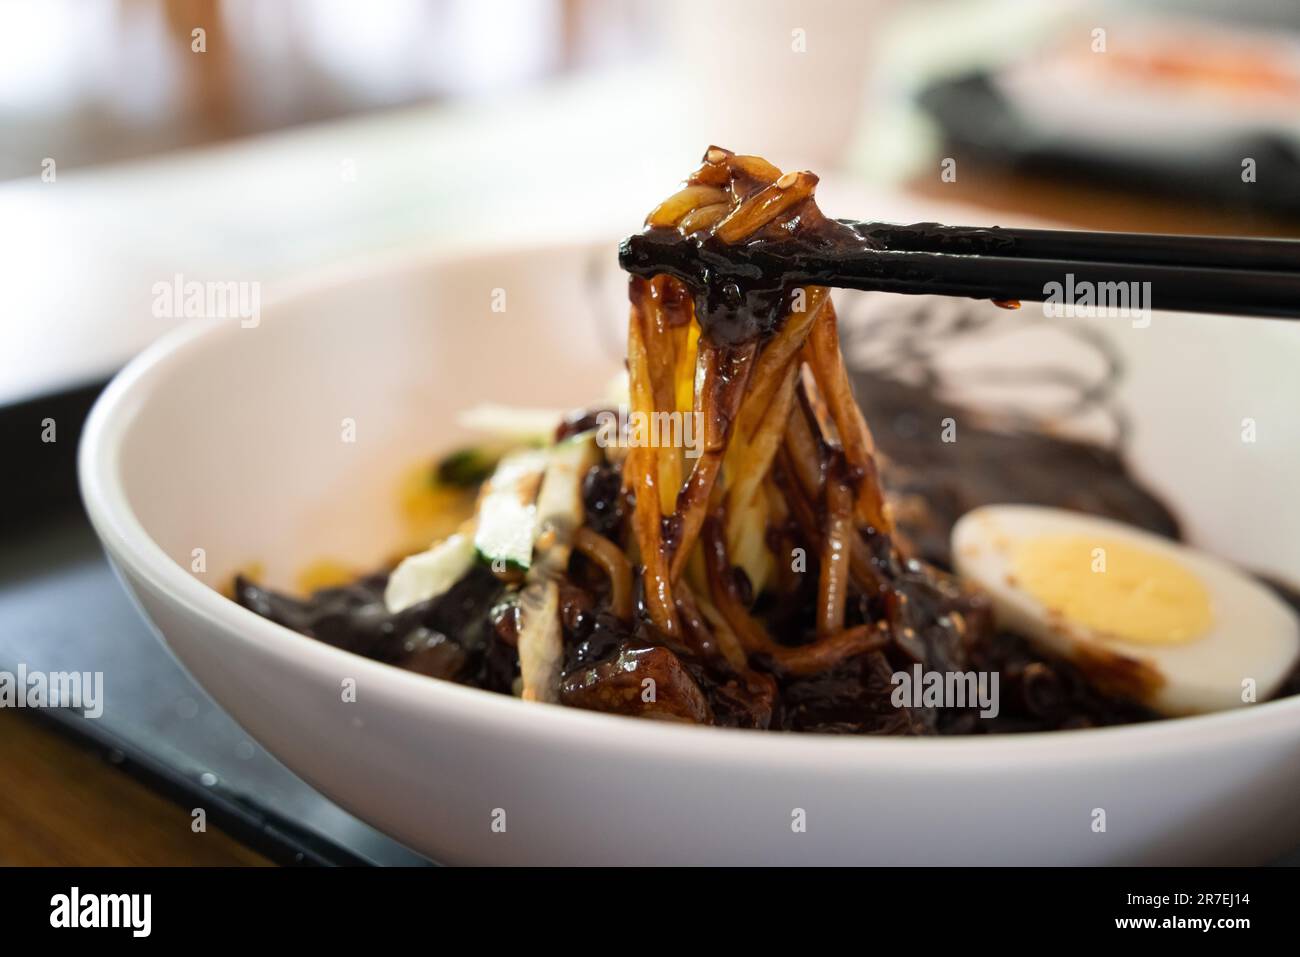 Délicieux jajangmyeon, jajangmyeon, sauce au plat de nouilles chinoises de style coréen, nappé d'une épaisse sauce à la pâte de haricots noirs en corée du Sud. Banque D'Images